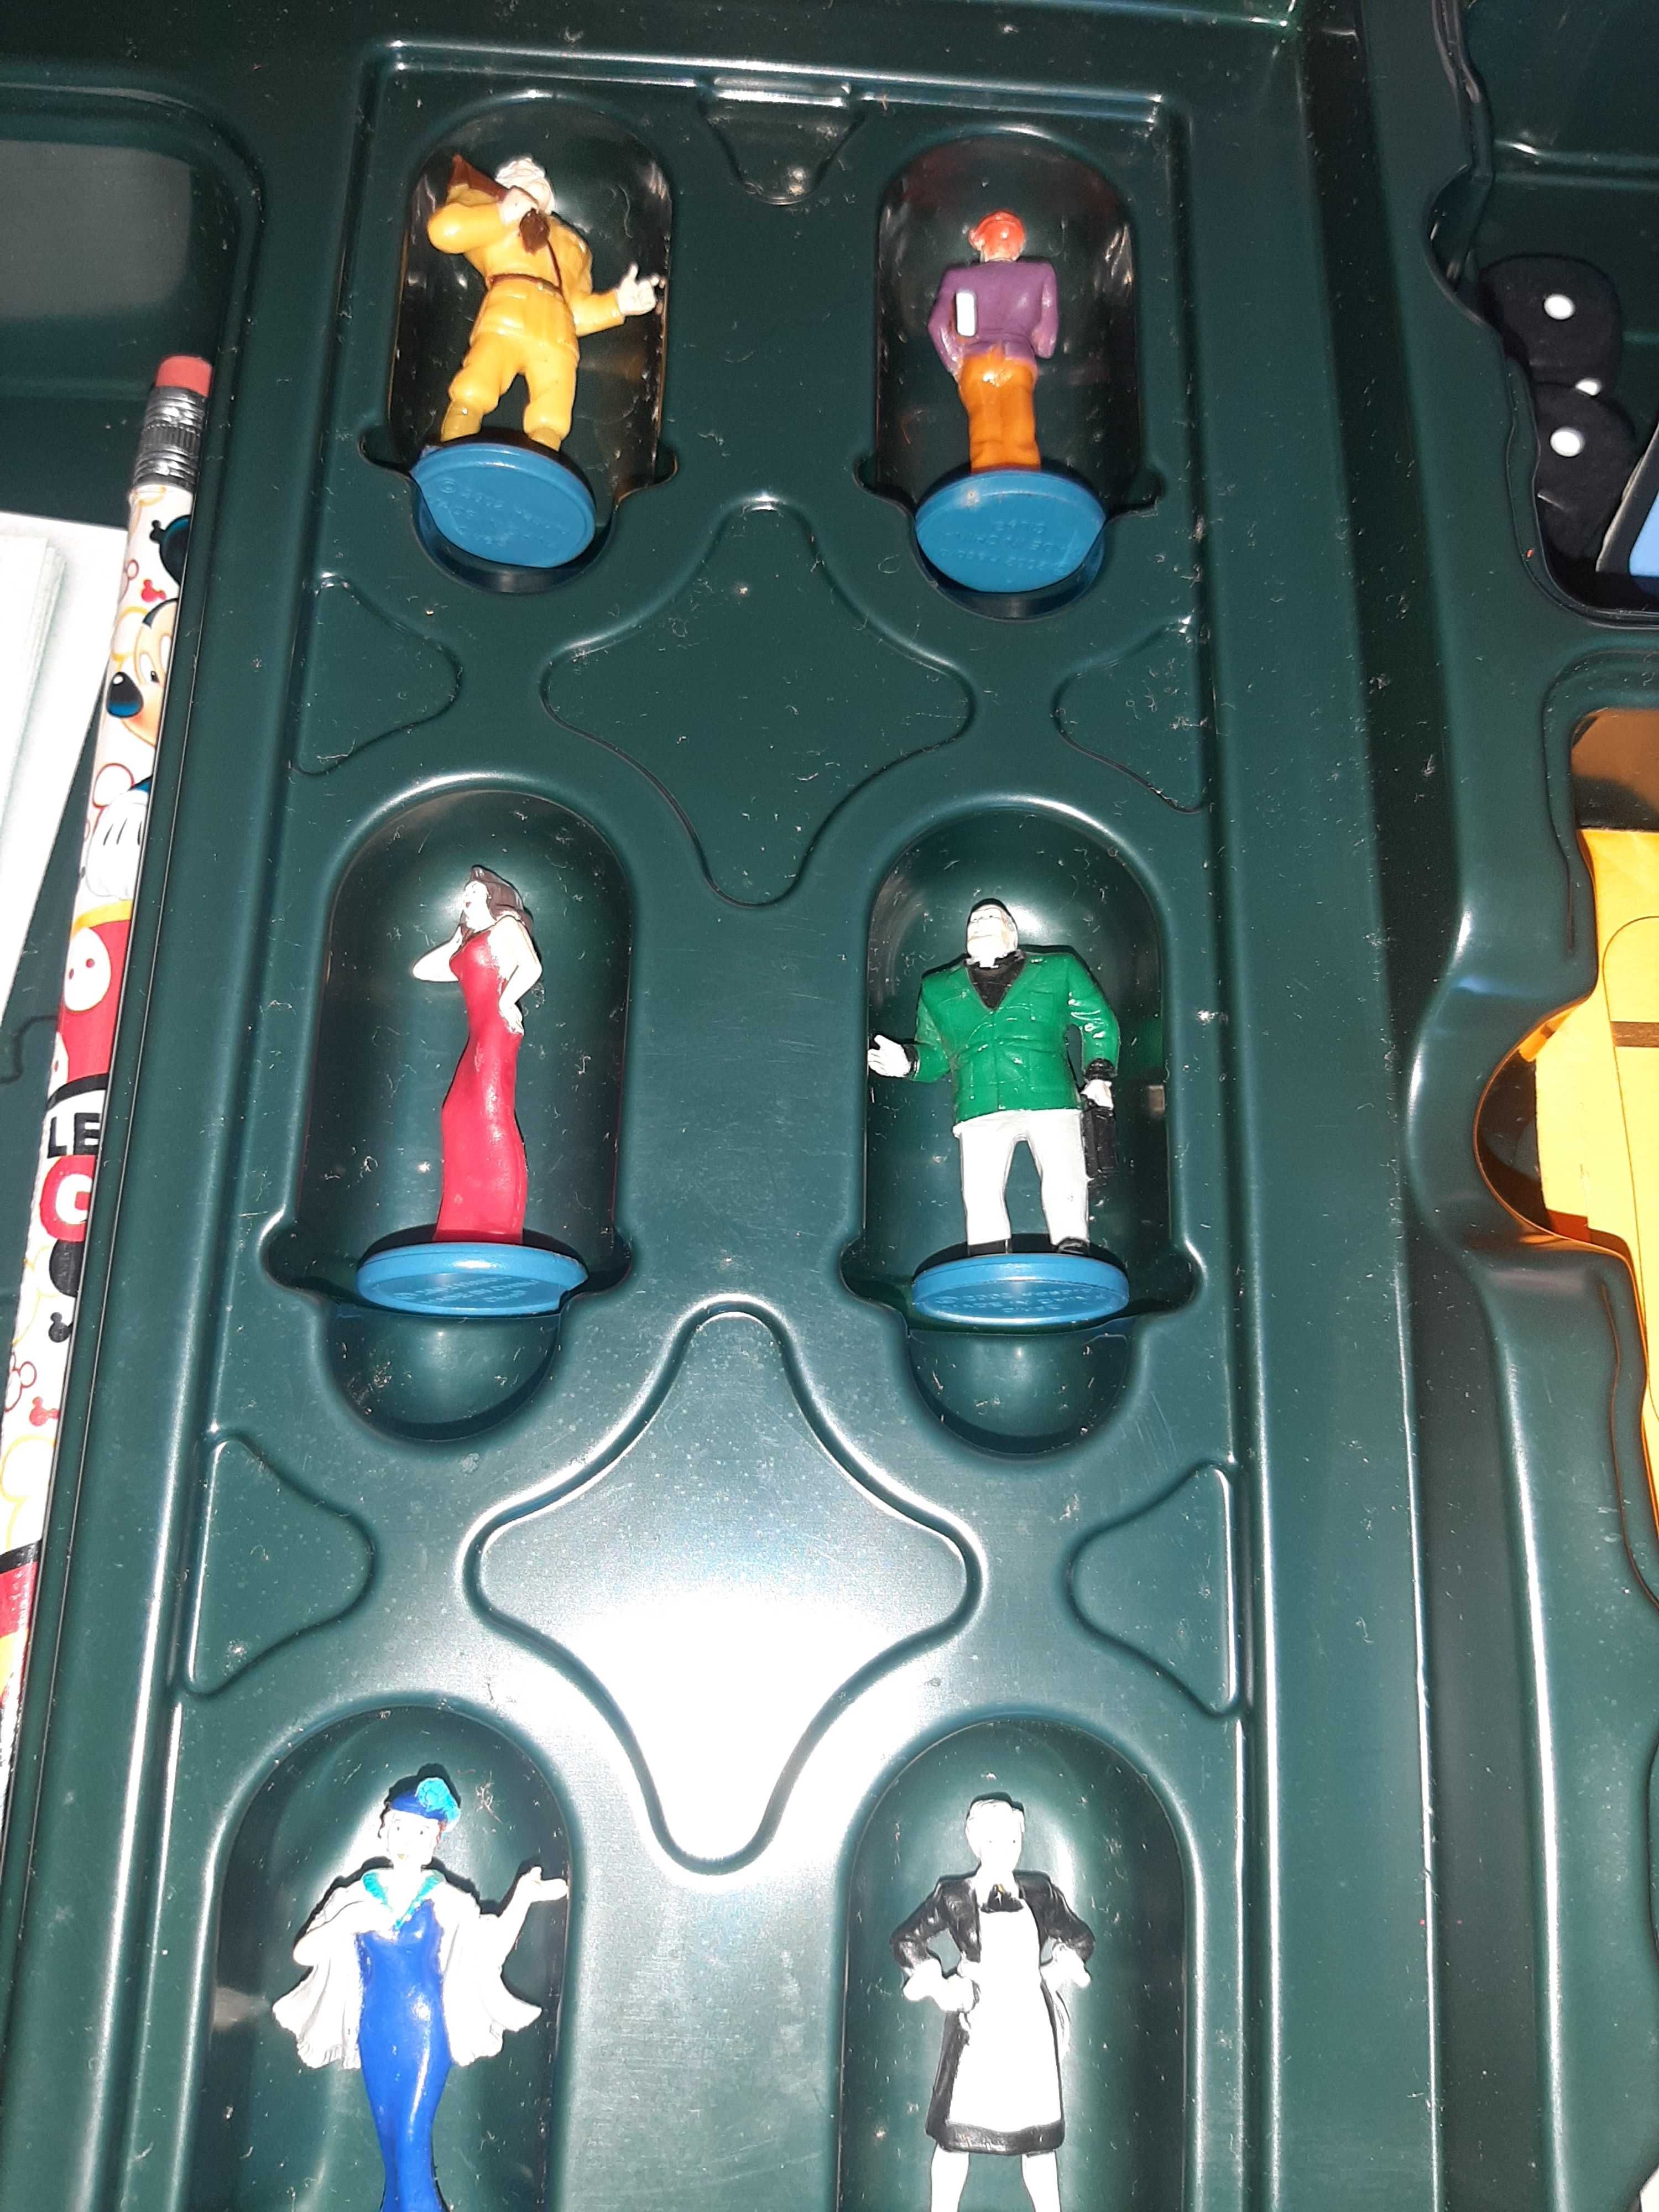 Jogo de tabuleiro Cluedo com 6 figuras pintadas da Parker